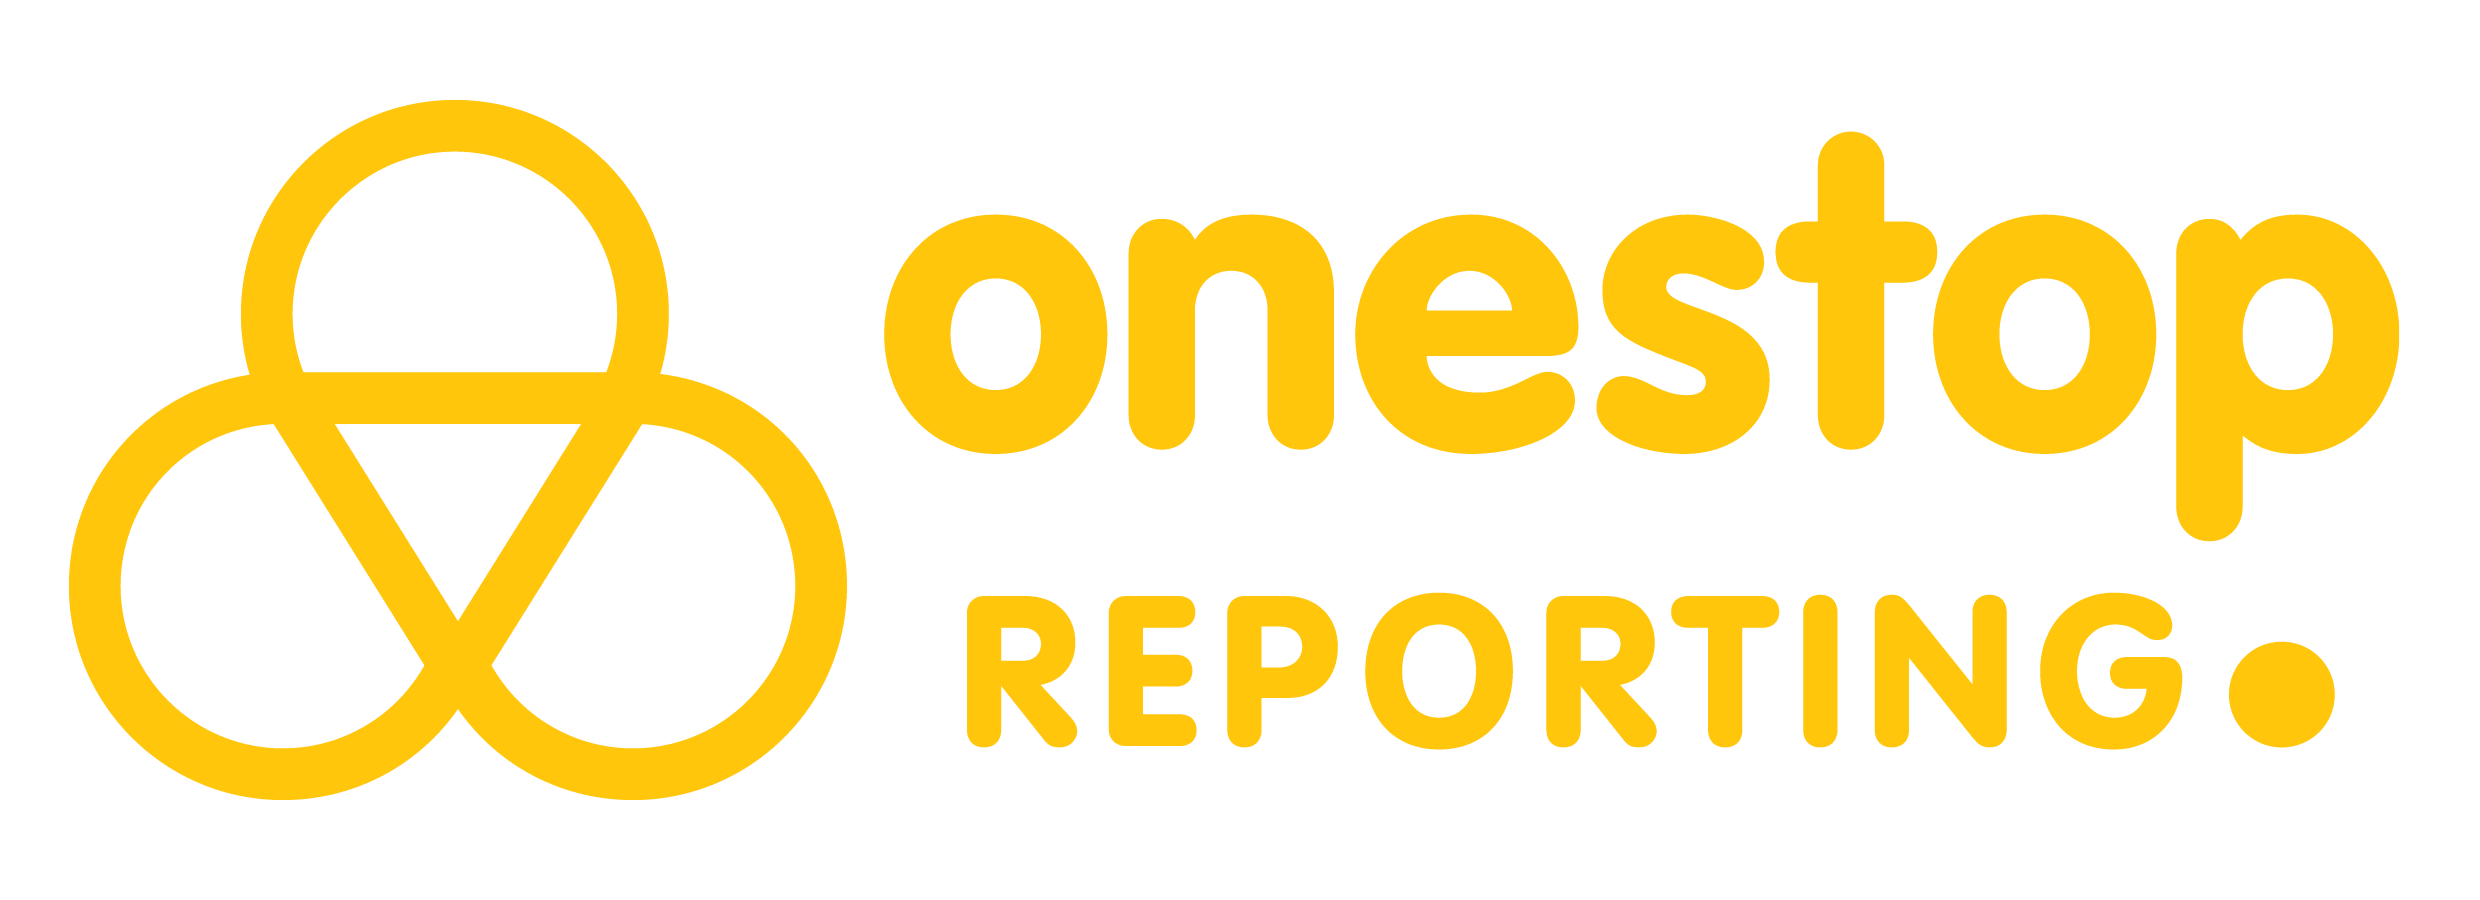 OneStop Reporting